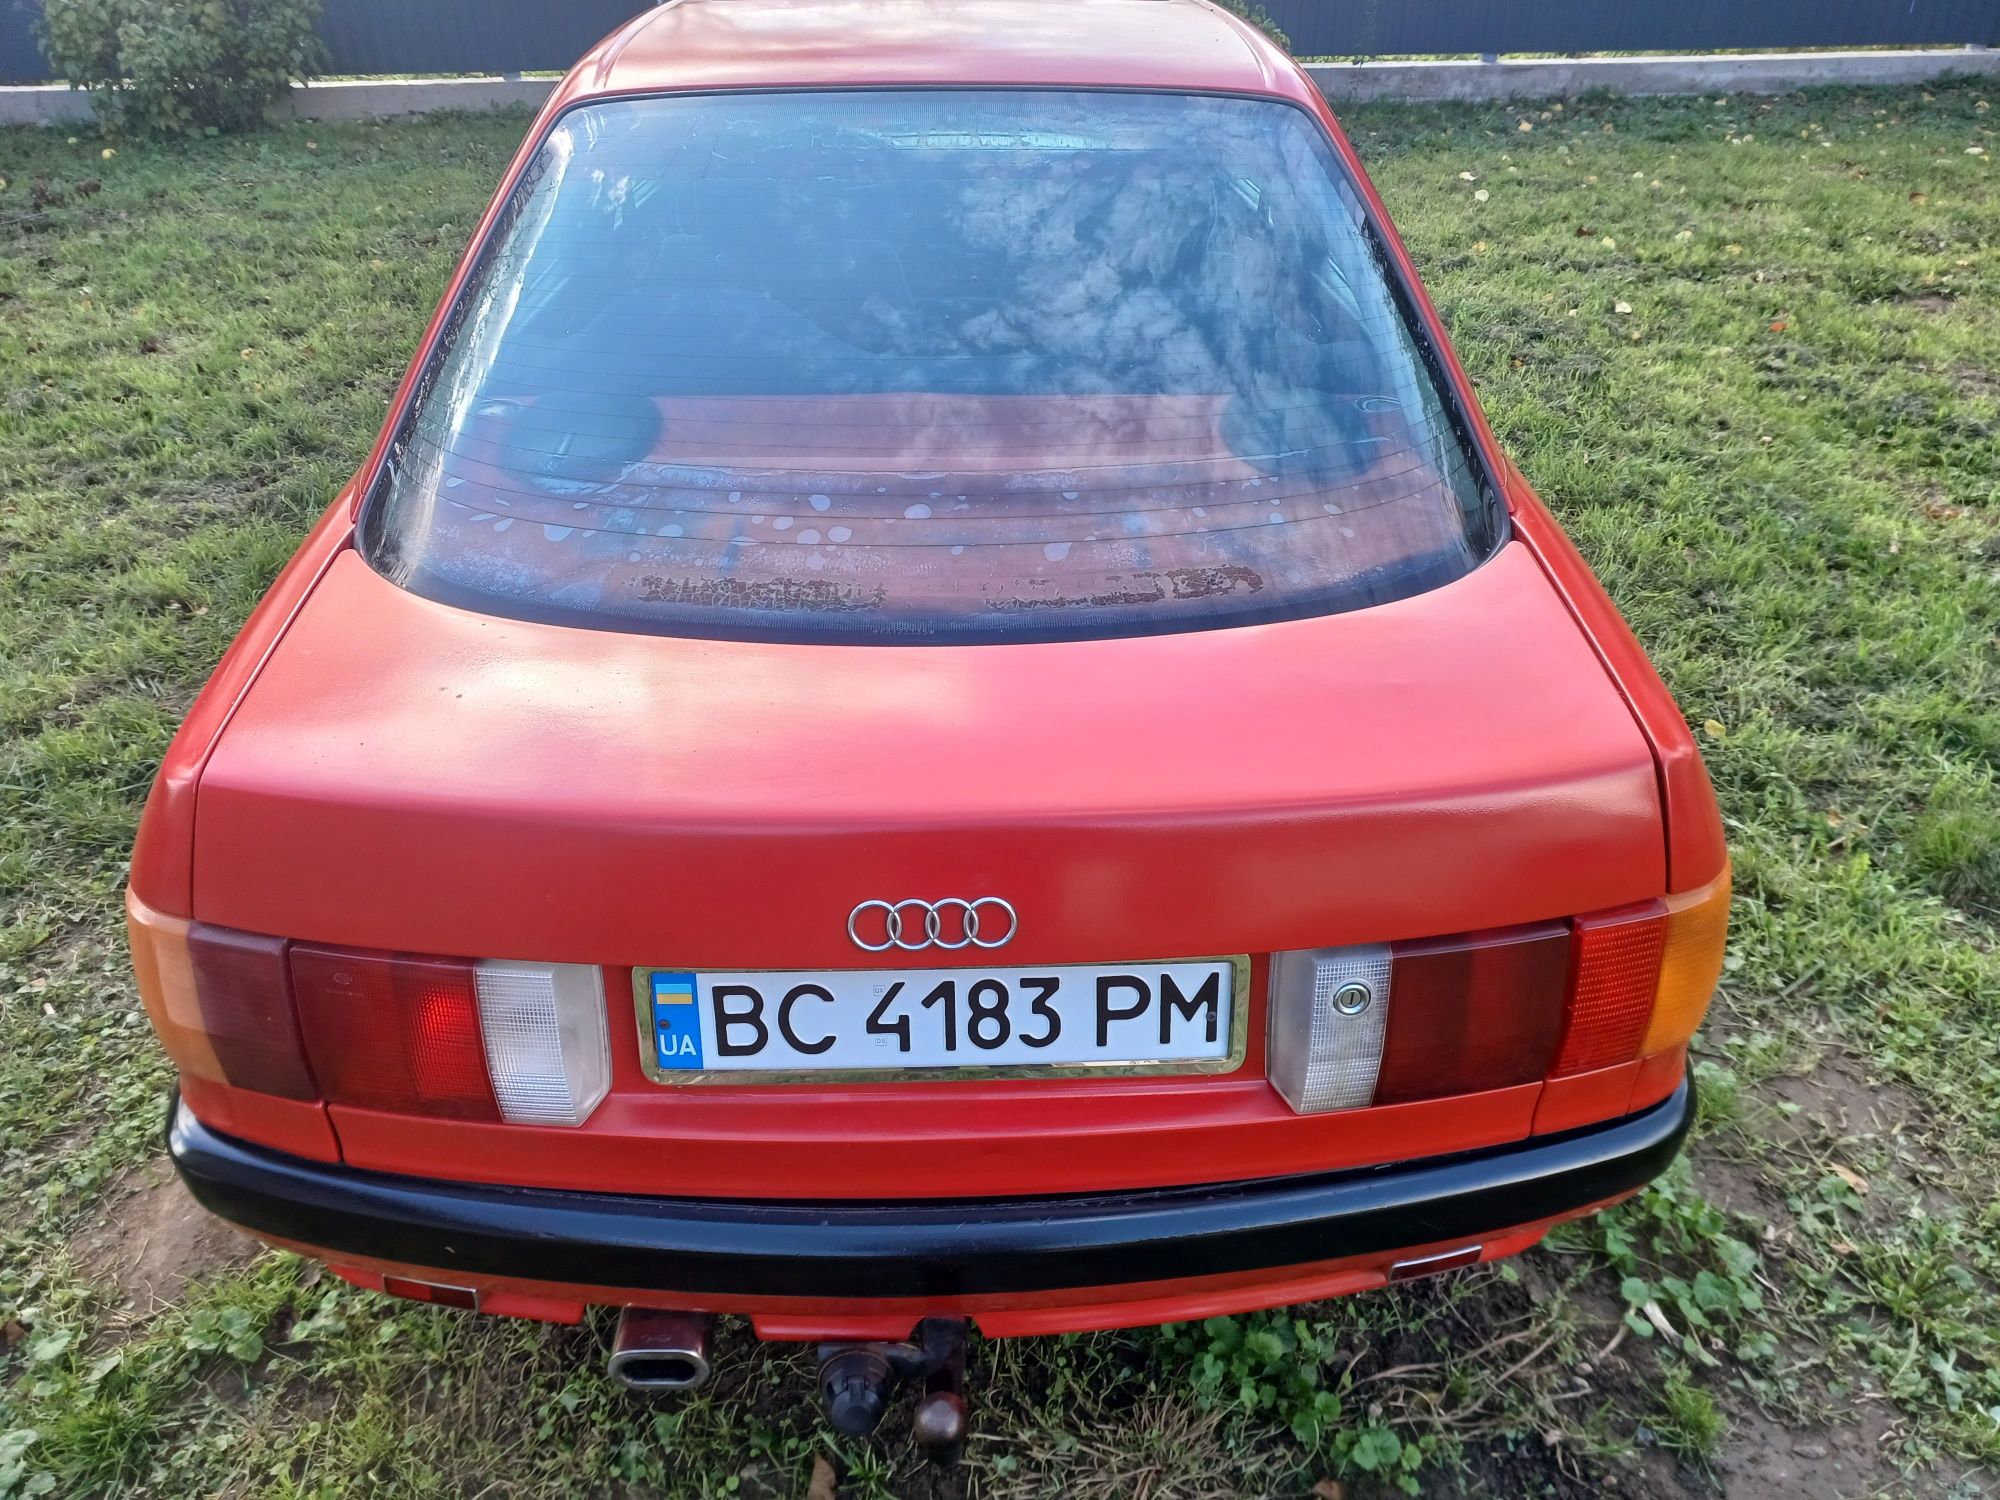 Продам Audi 80b3 1989p: 1 700 $ - Audi Новый Калинов на Olx